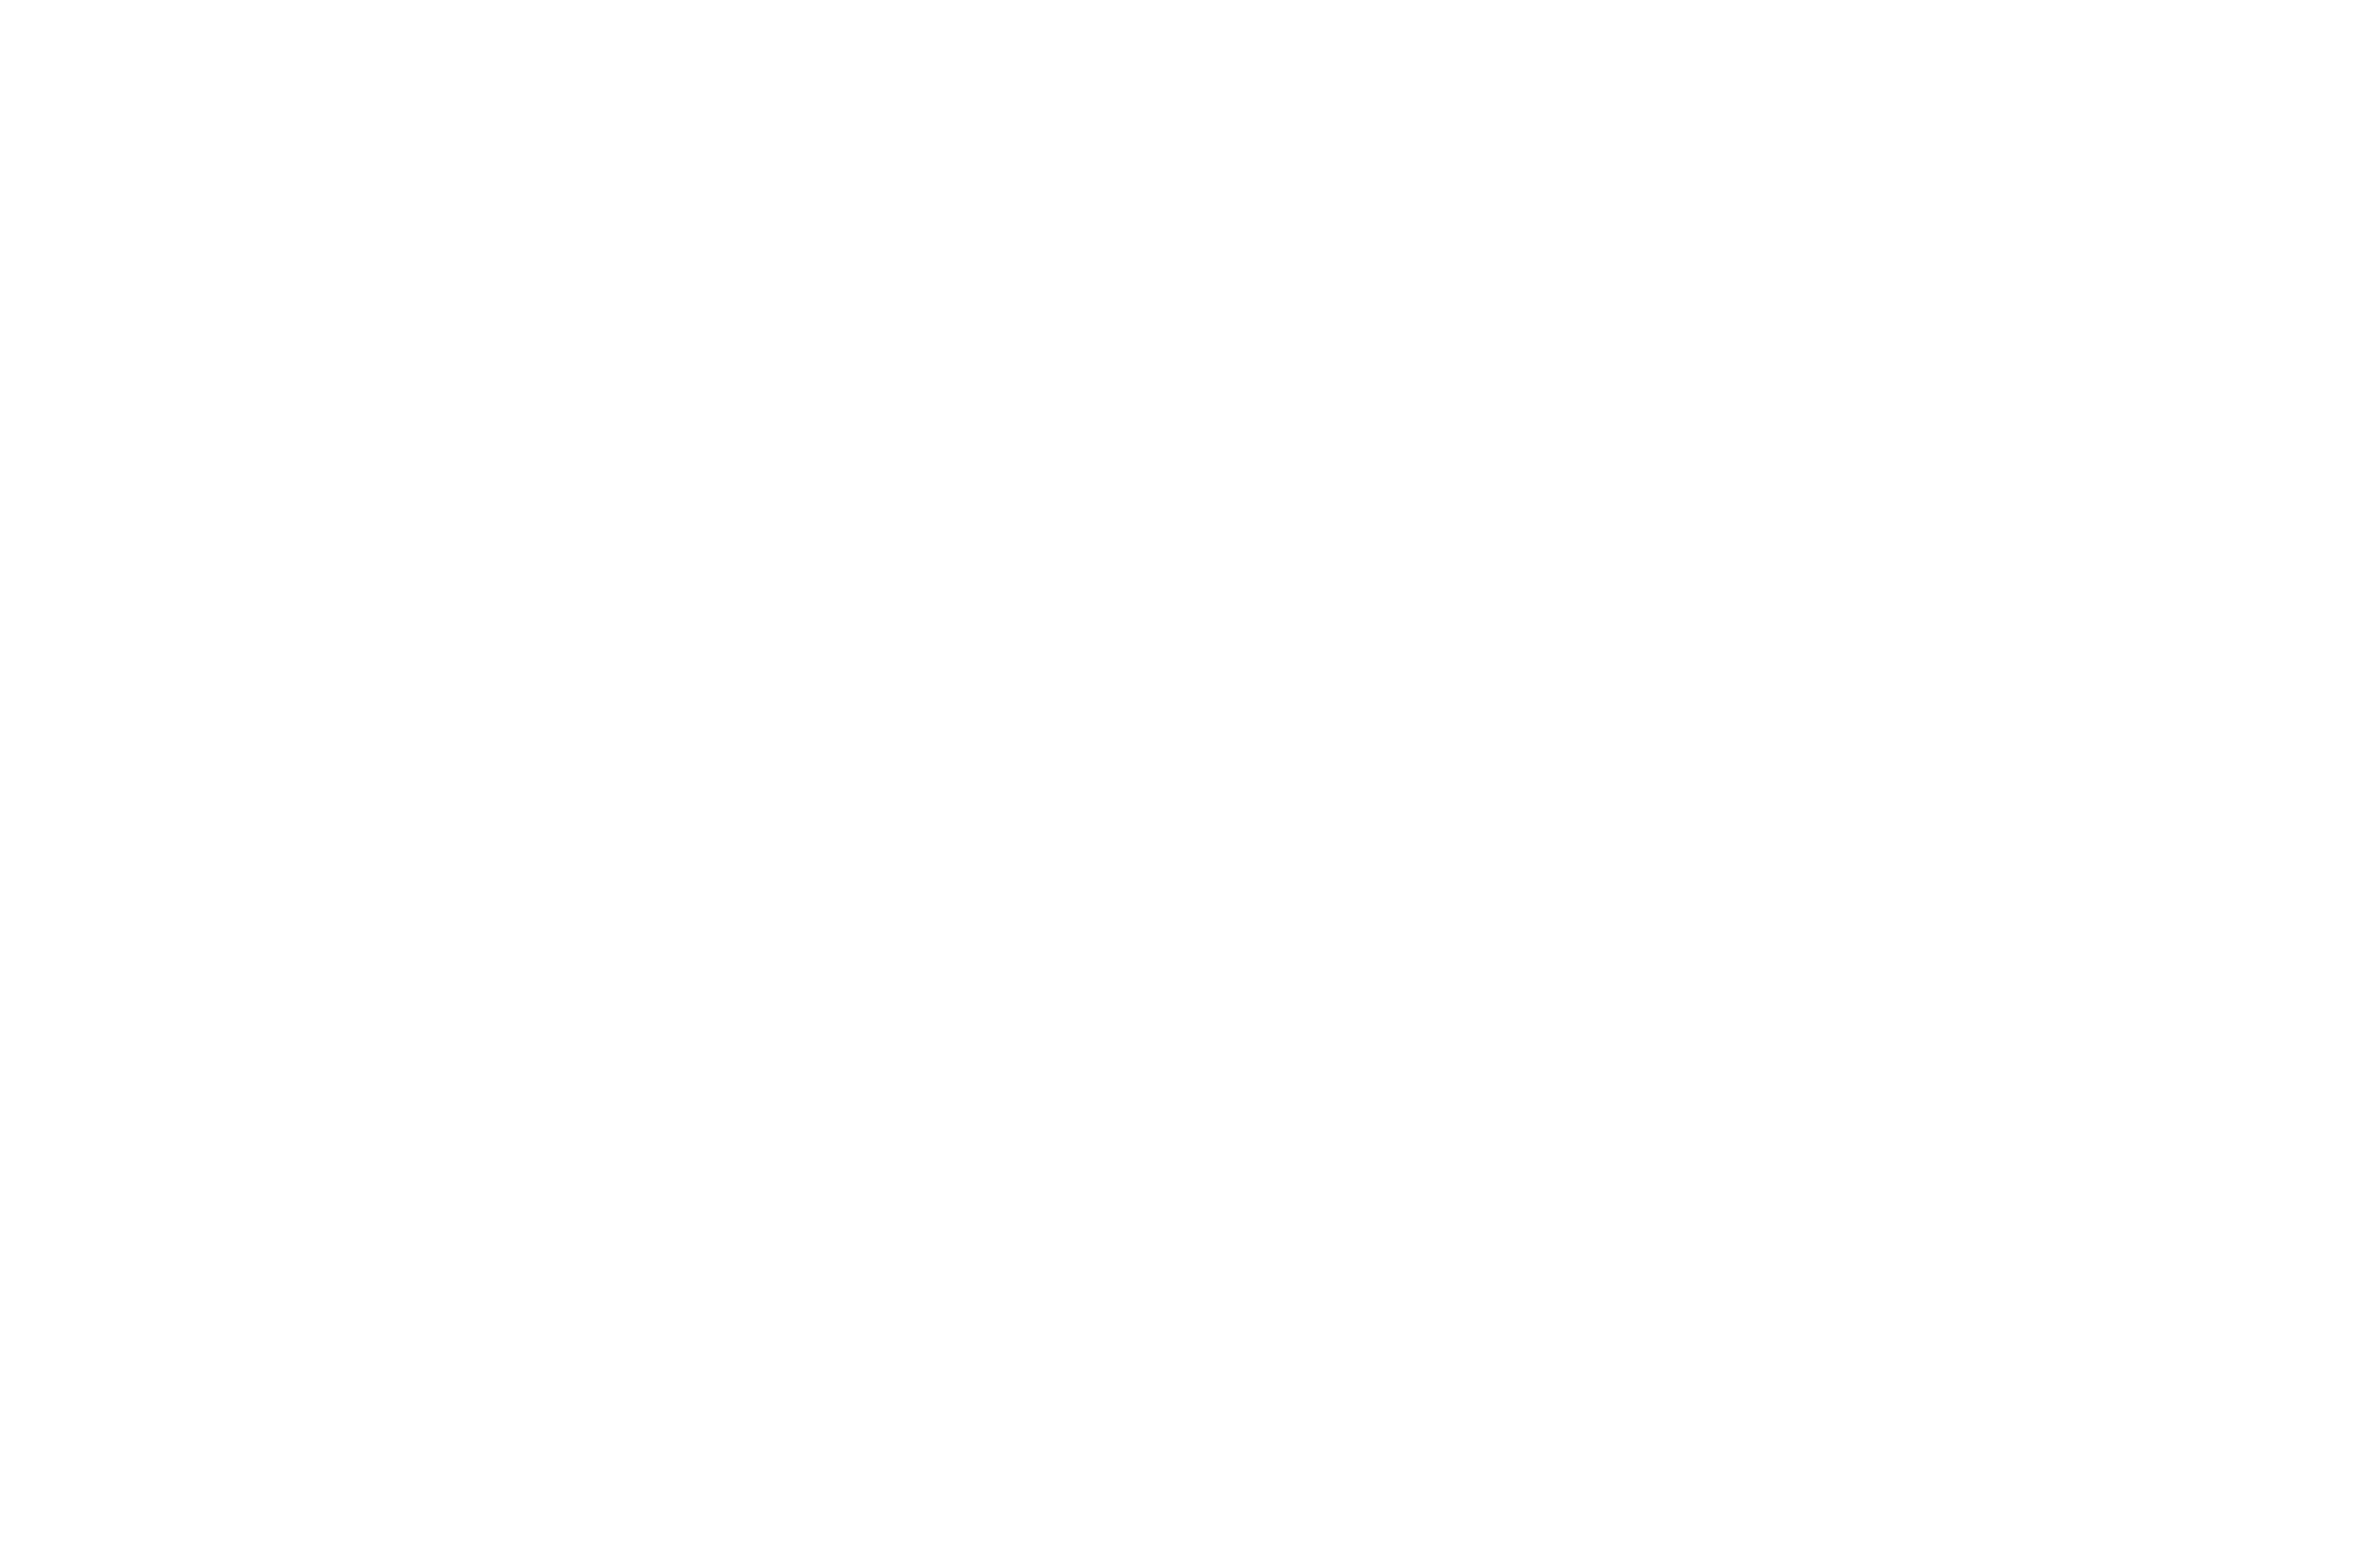 INTERIOREX